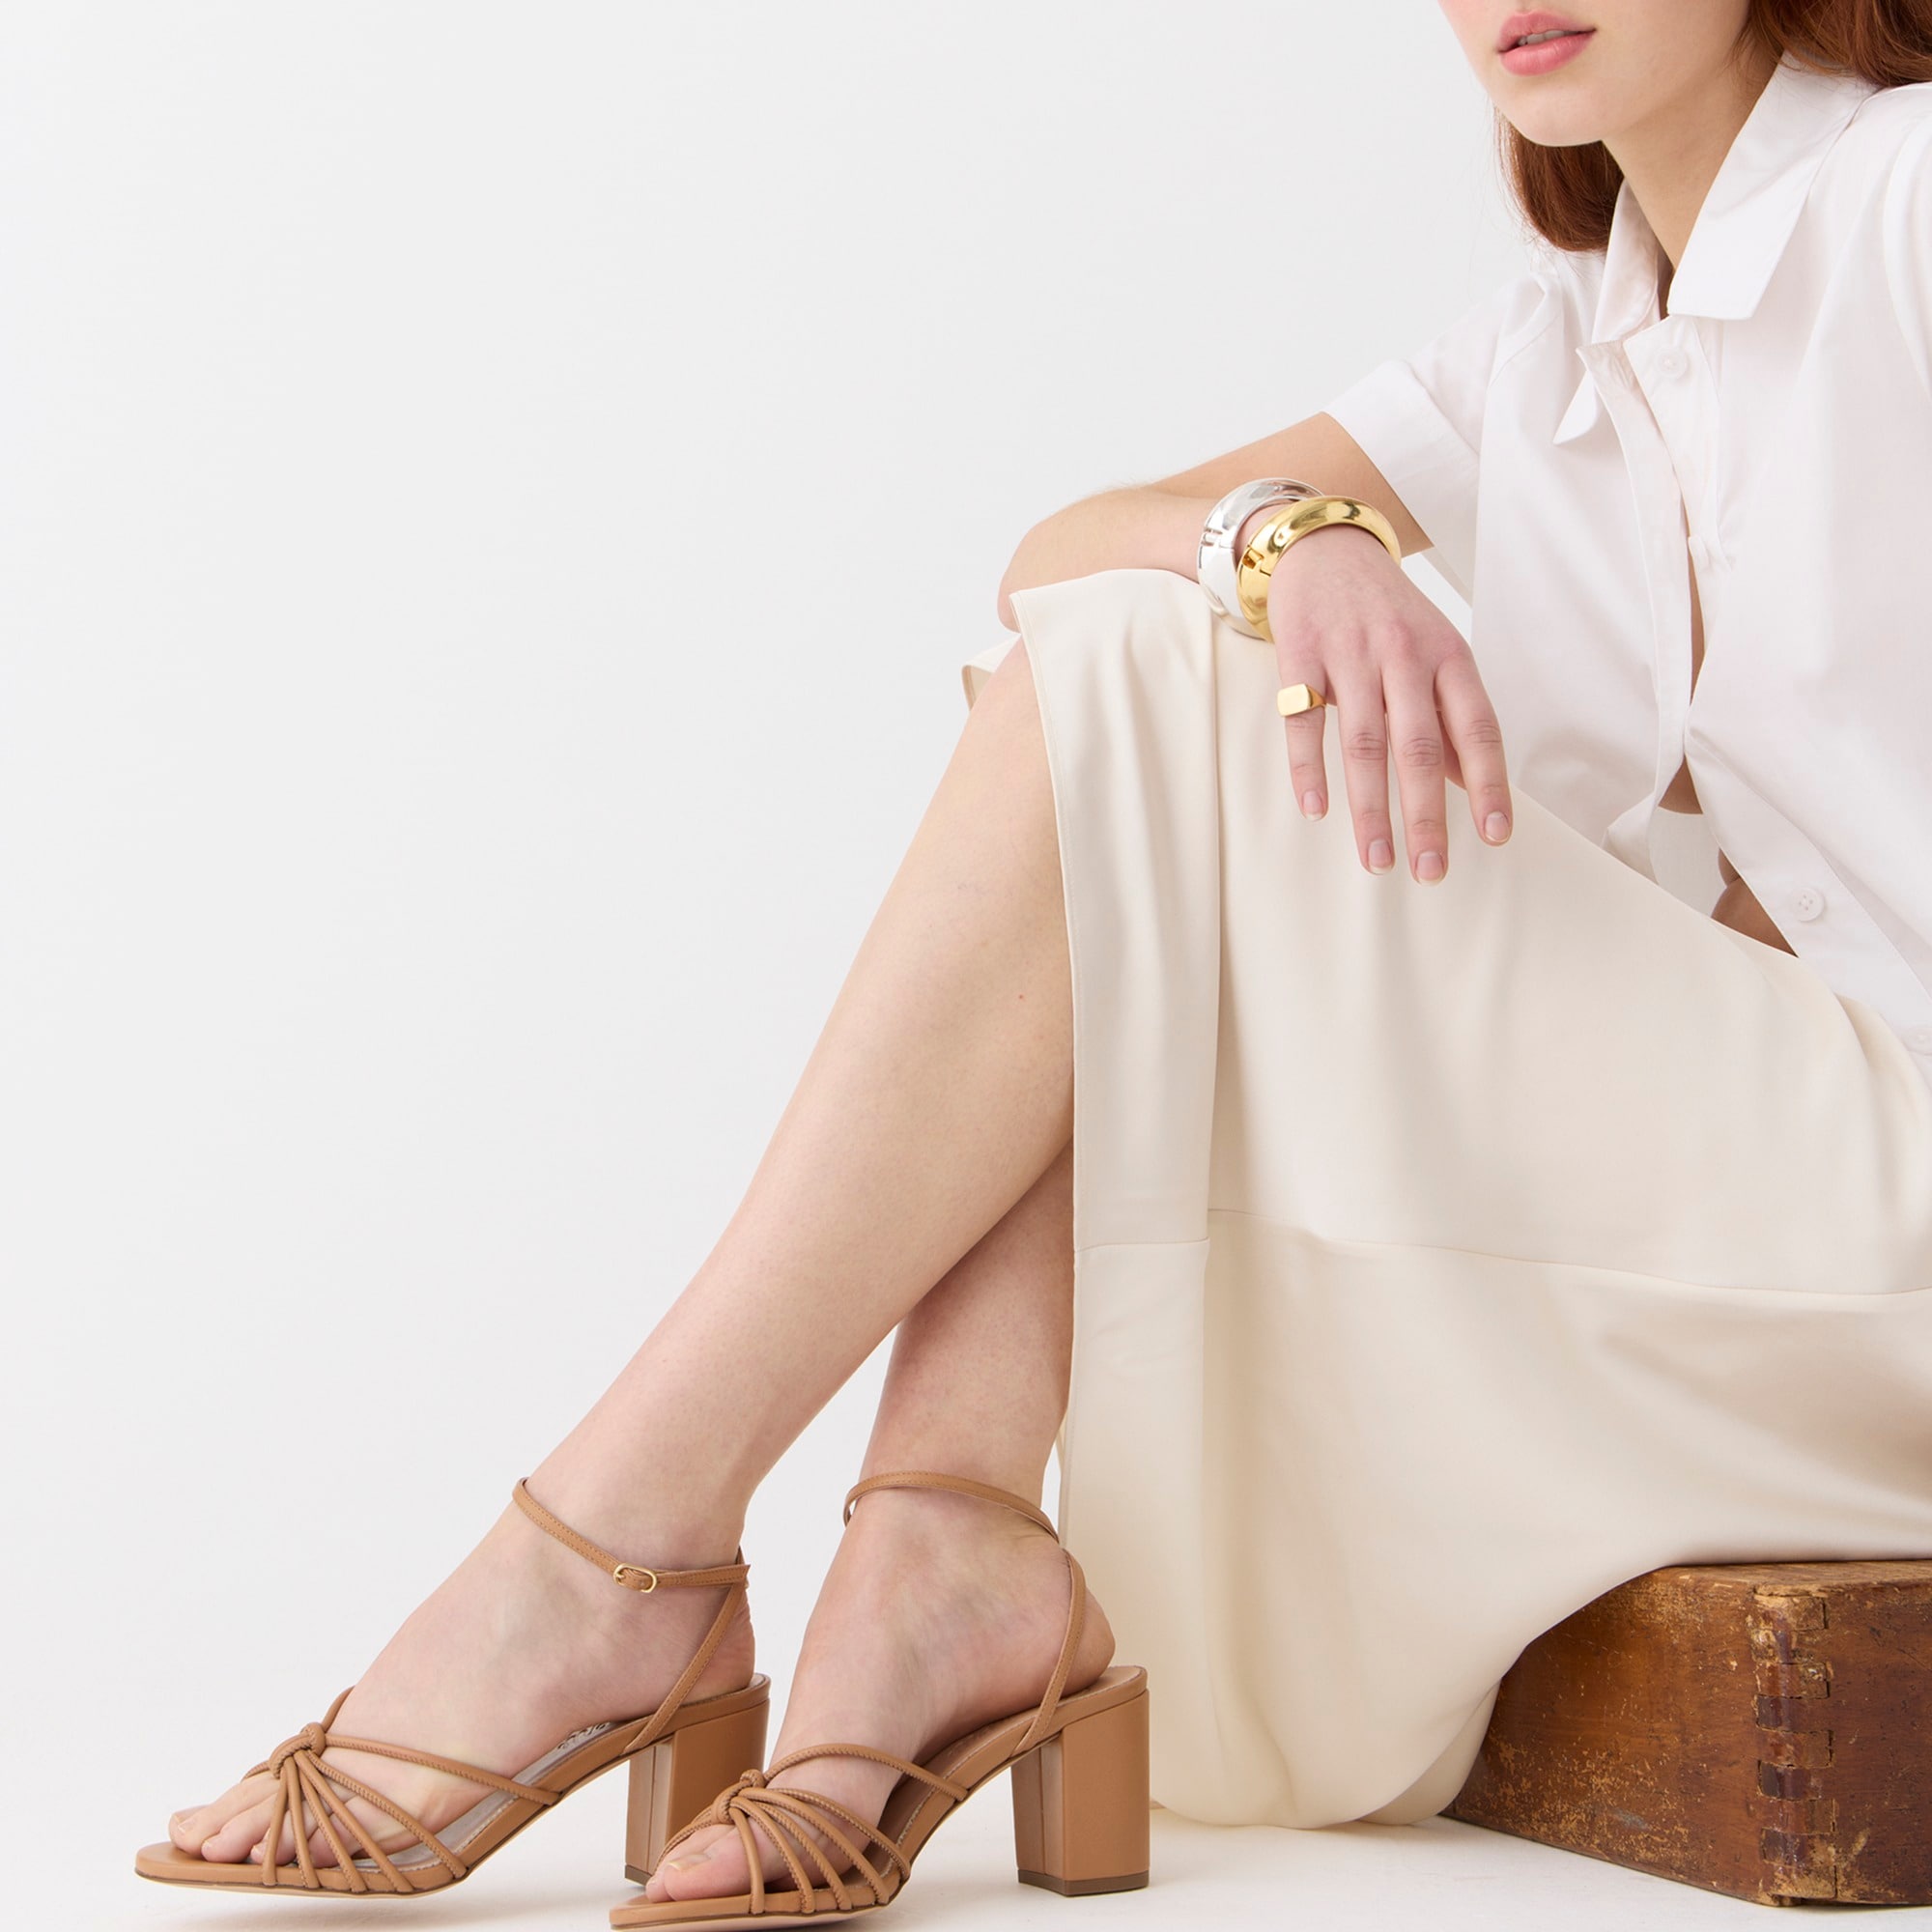 Jcrew Lucie strappy block-heel sandals in Italian metallic leather